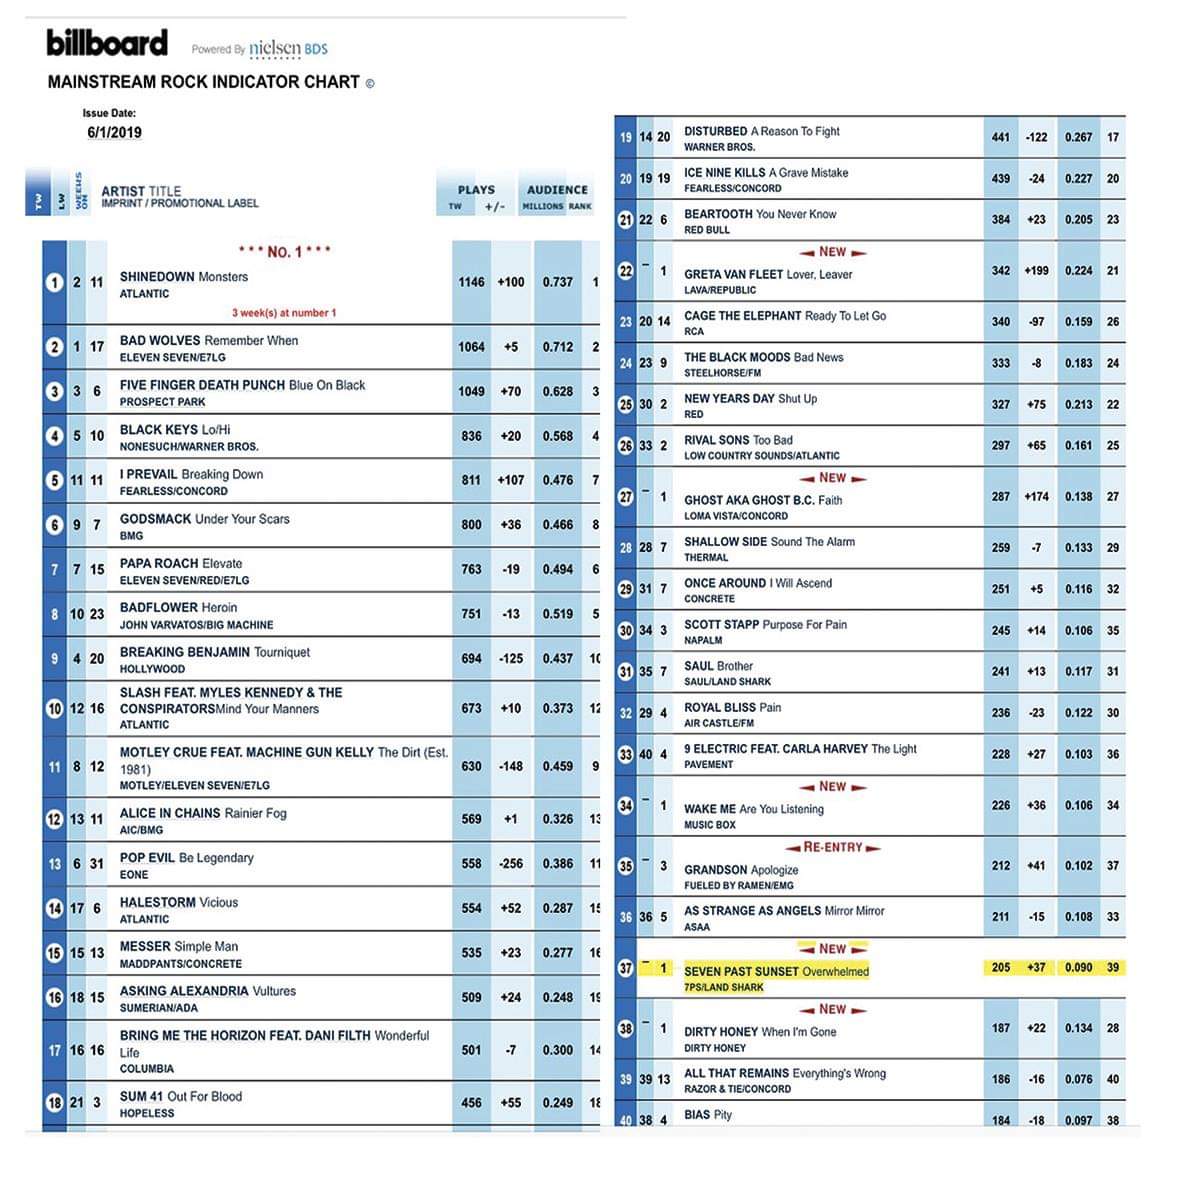 Billboard Charts Twitter